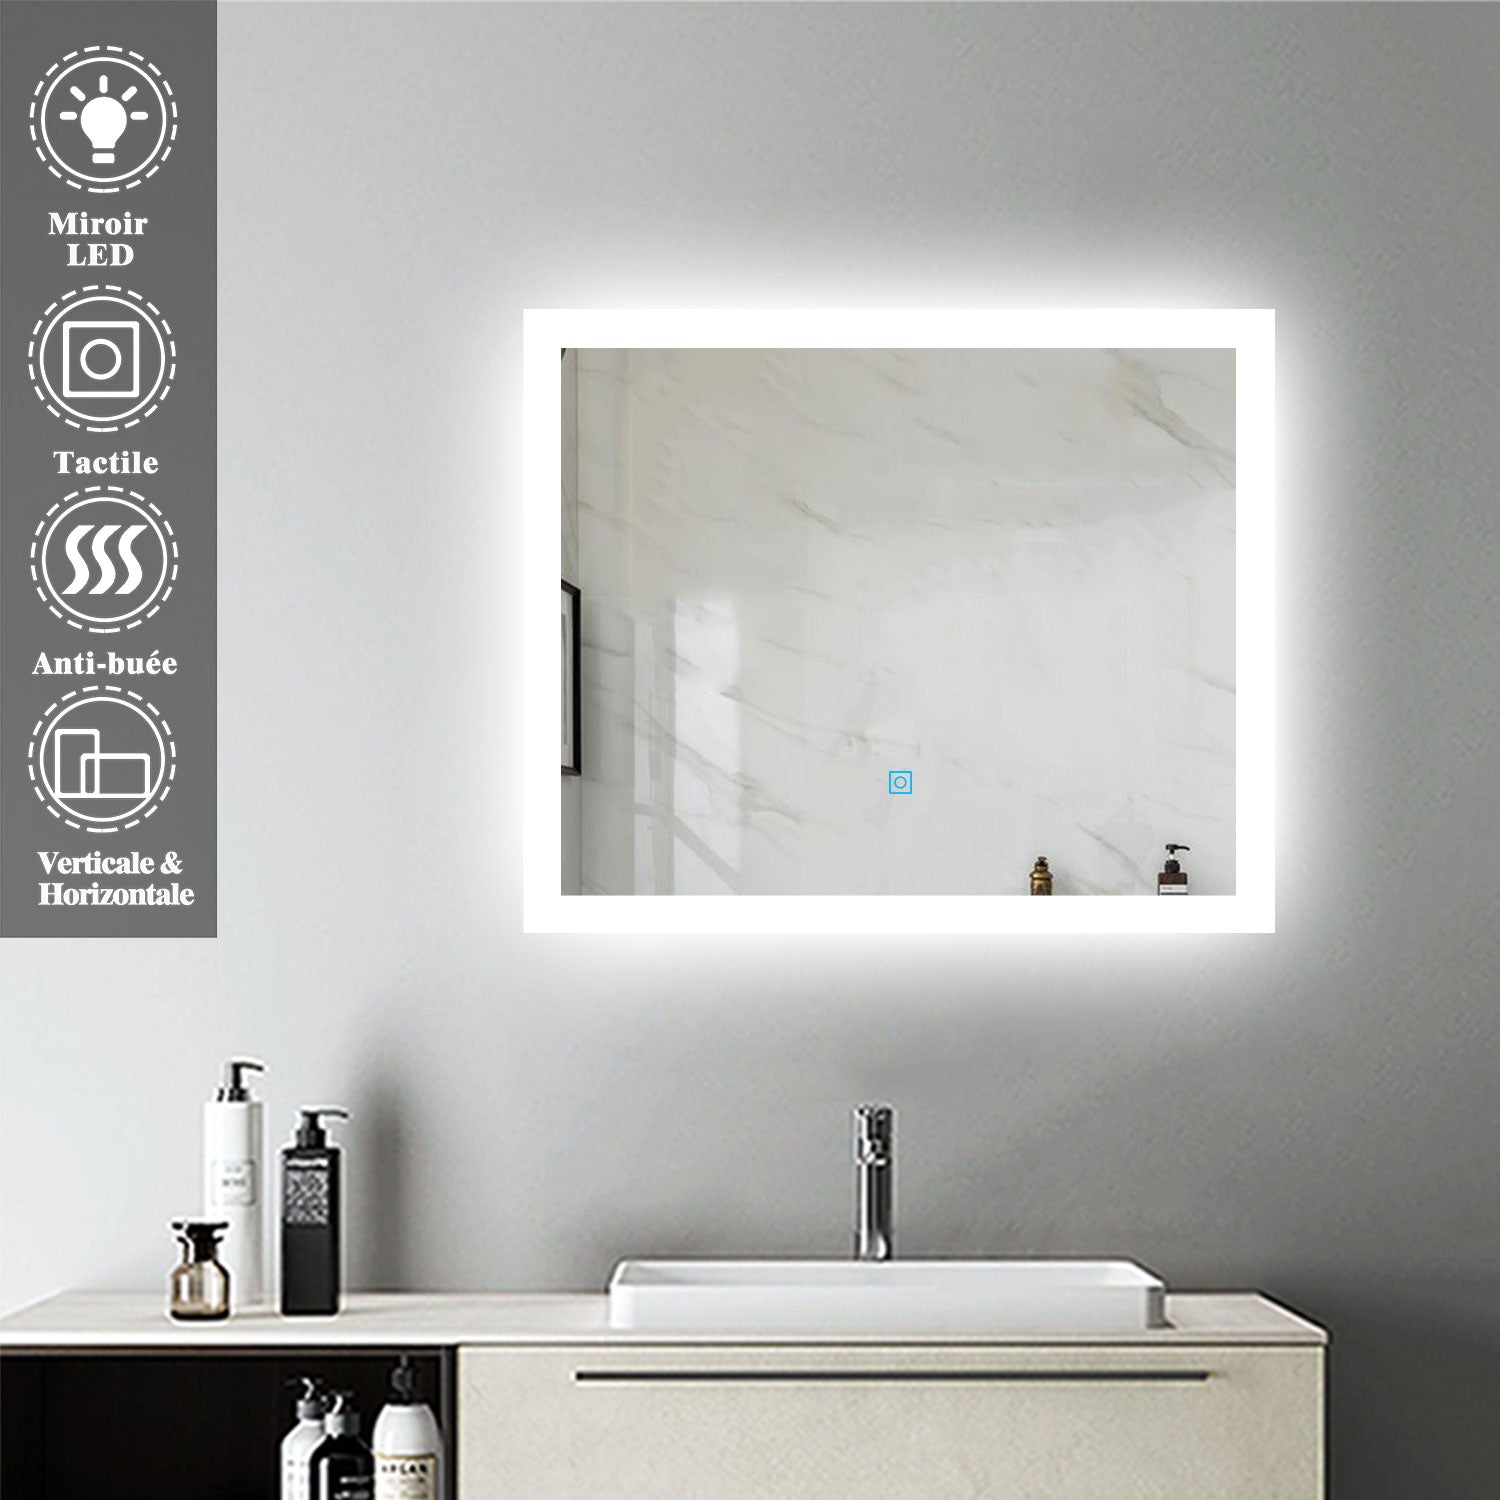 Miroir pour salle de bain rectangulaire, illumination LED, éclairage intégré, avec fonction anti-buée, lumière Blanche Froide, Horizontal/Vertical -Livraison gratuite